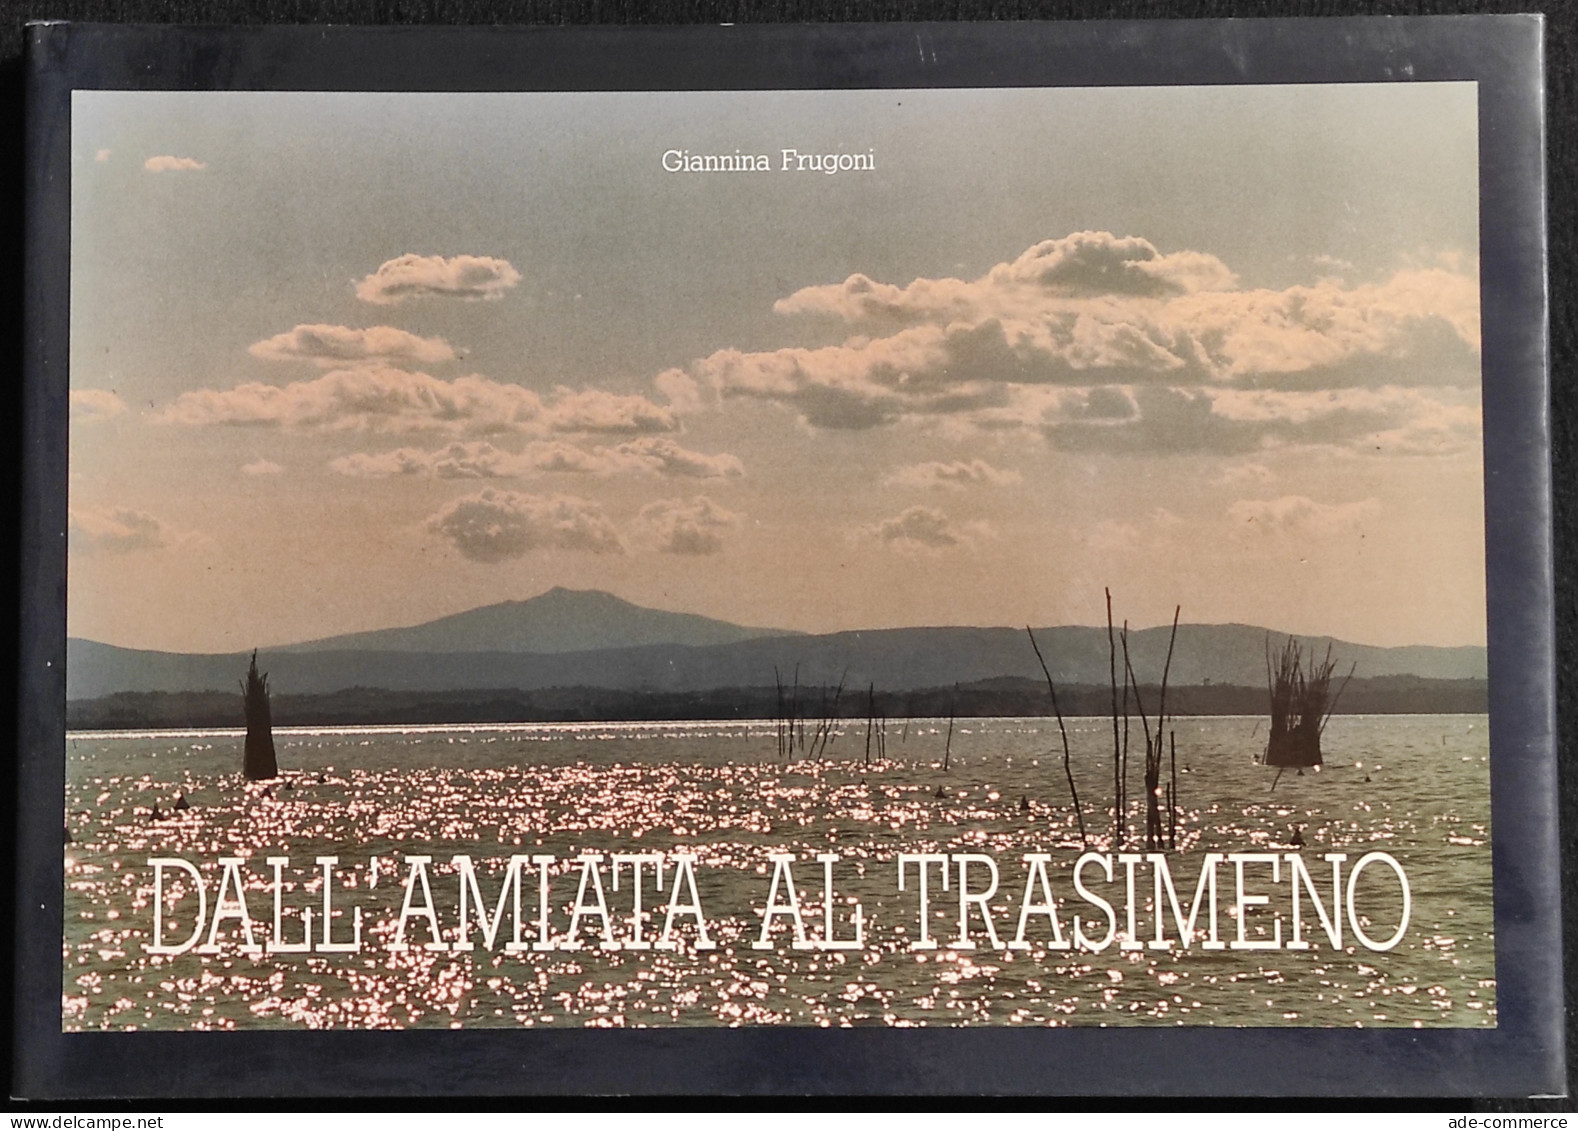 Dall'Amiata Al Transimeno - G. Frugoni - Volumnia Ed. - 1990 - Fotografia